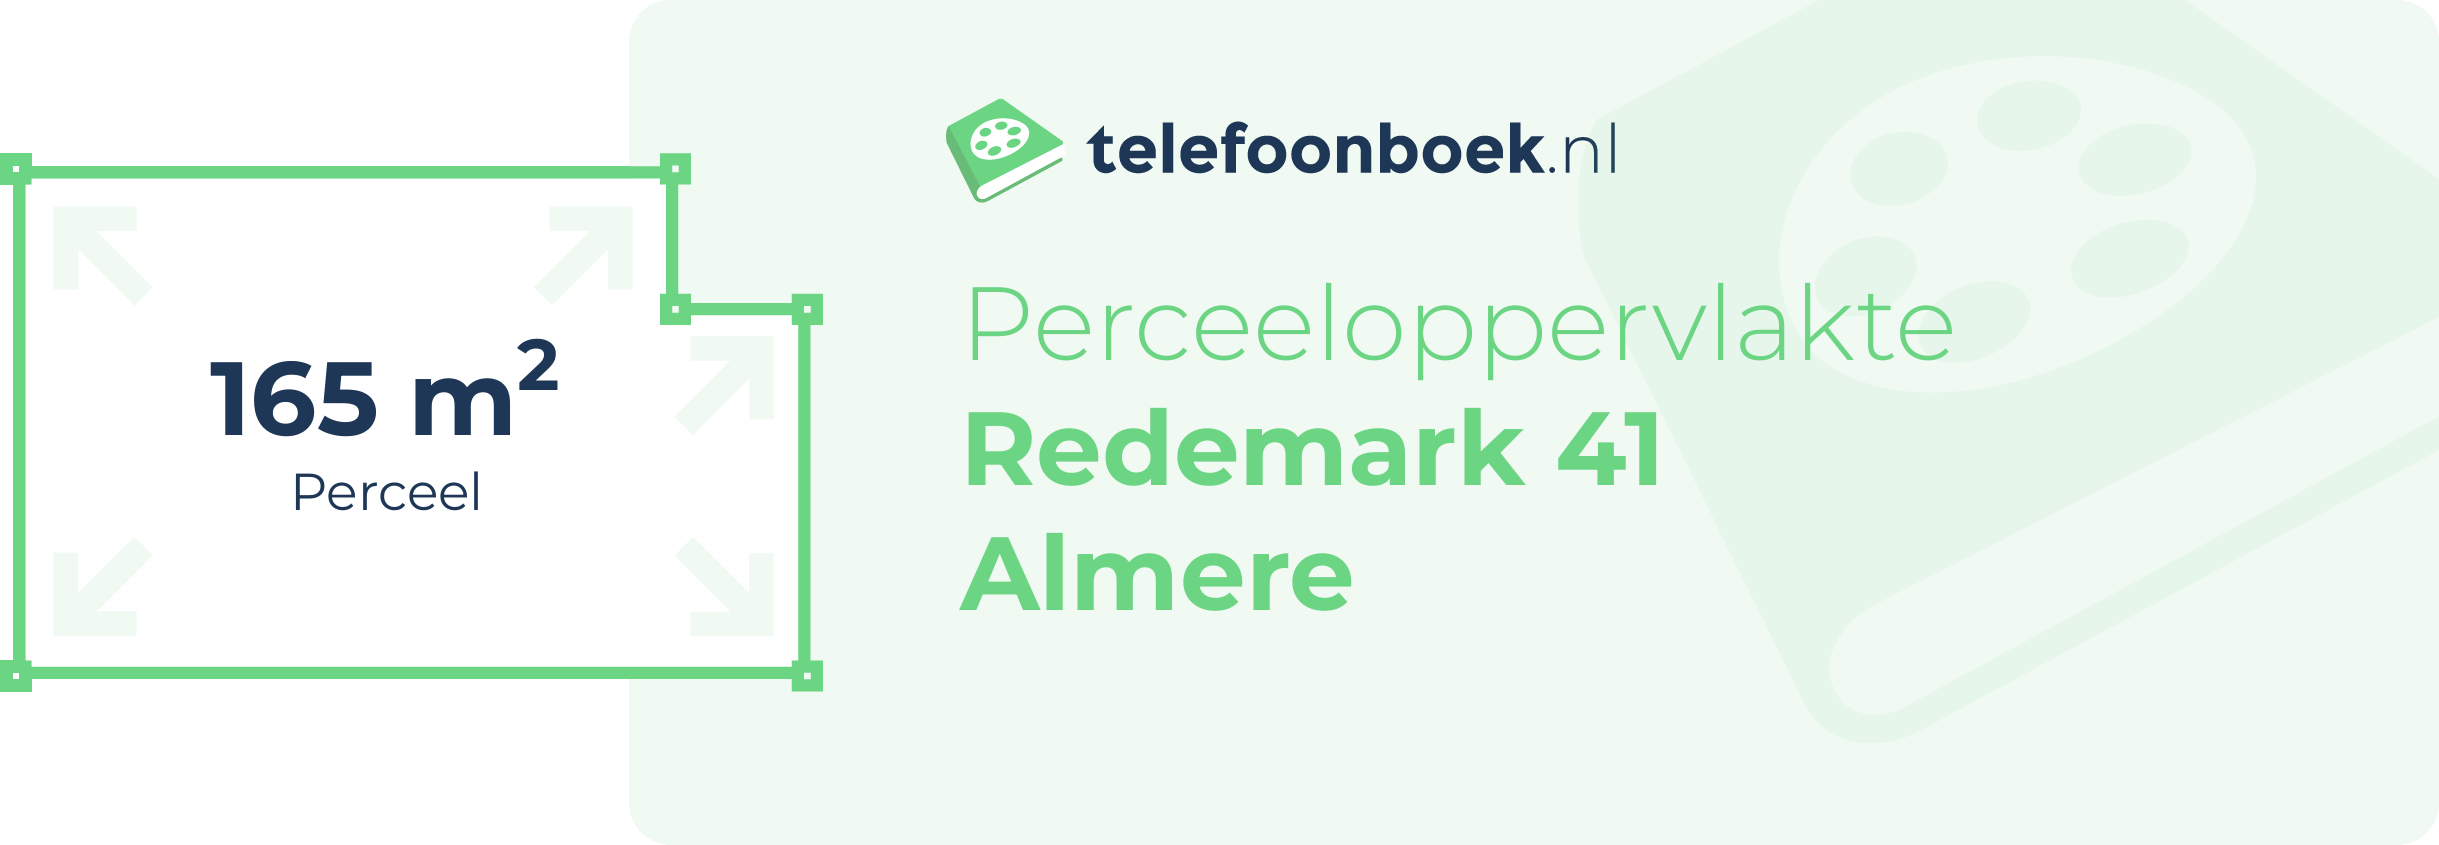 Perceeloppervlakte Redemark 41 Almere